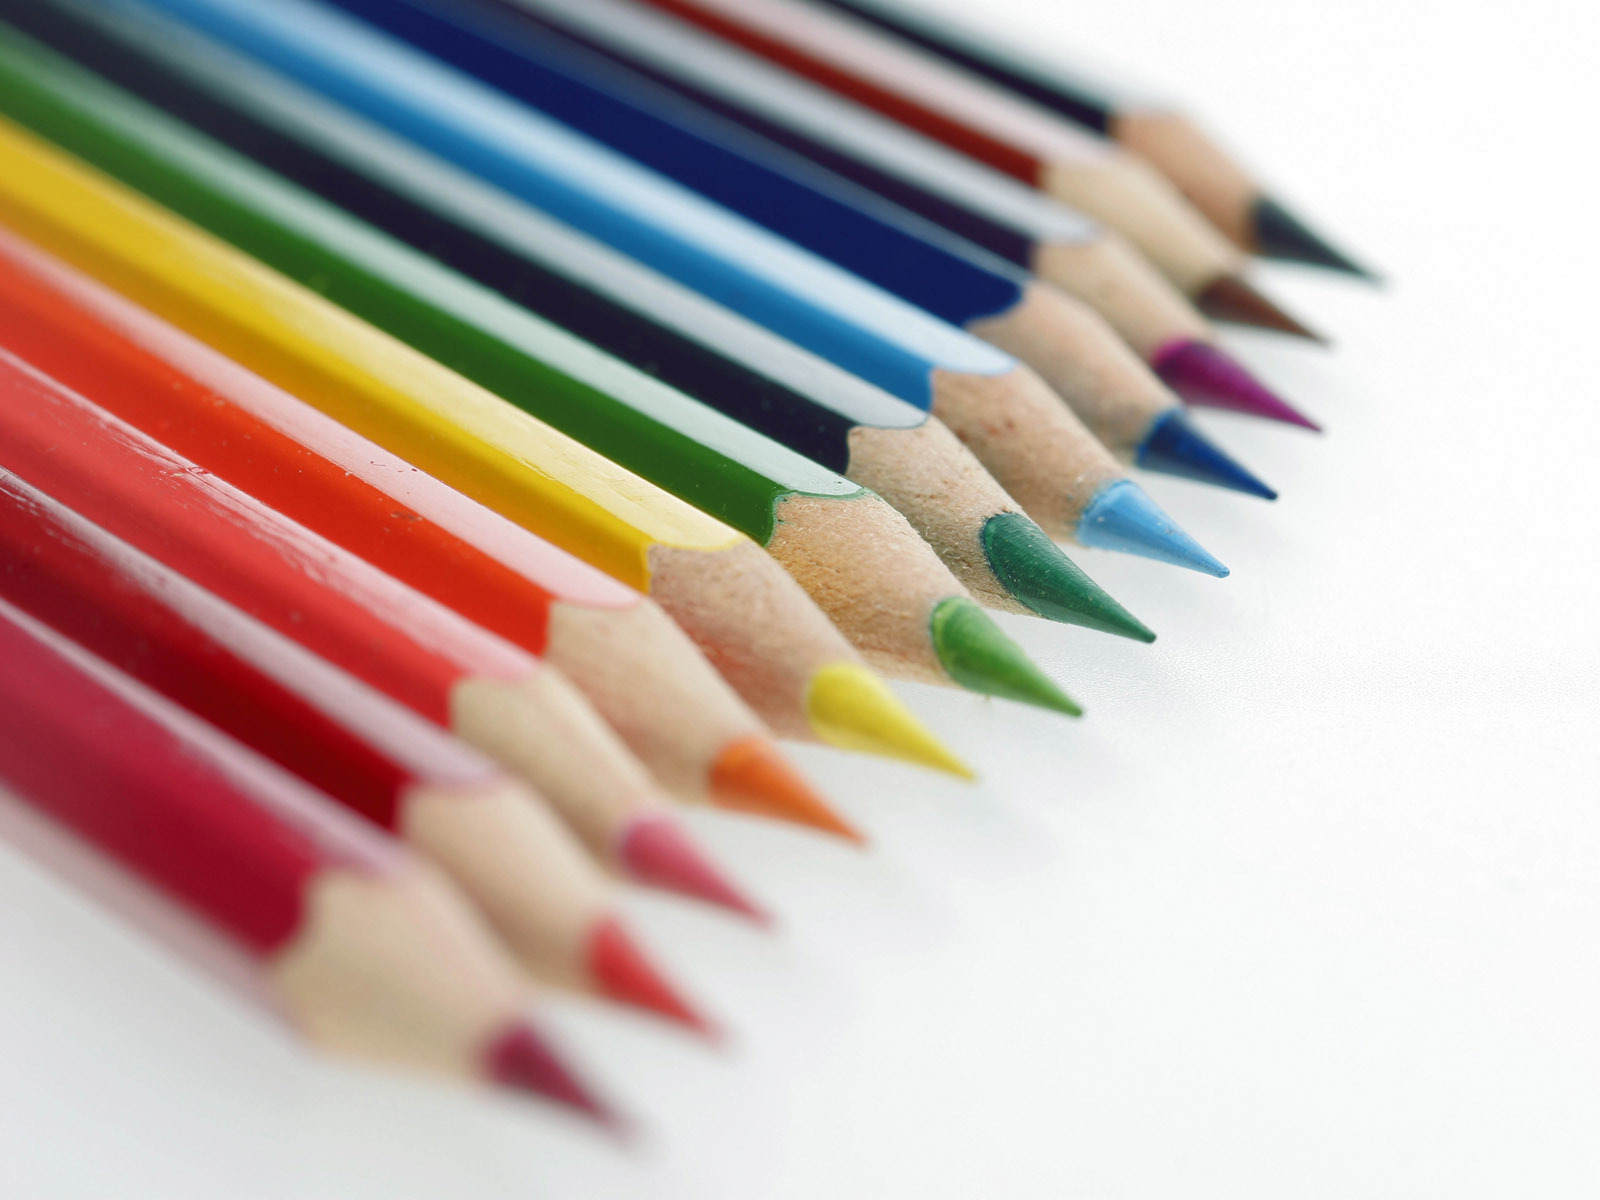 colored-pencils-pencils-wallpaper-22186601-fanpop